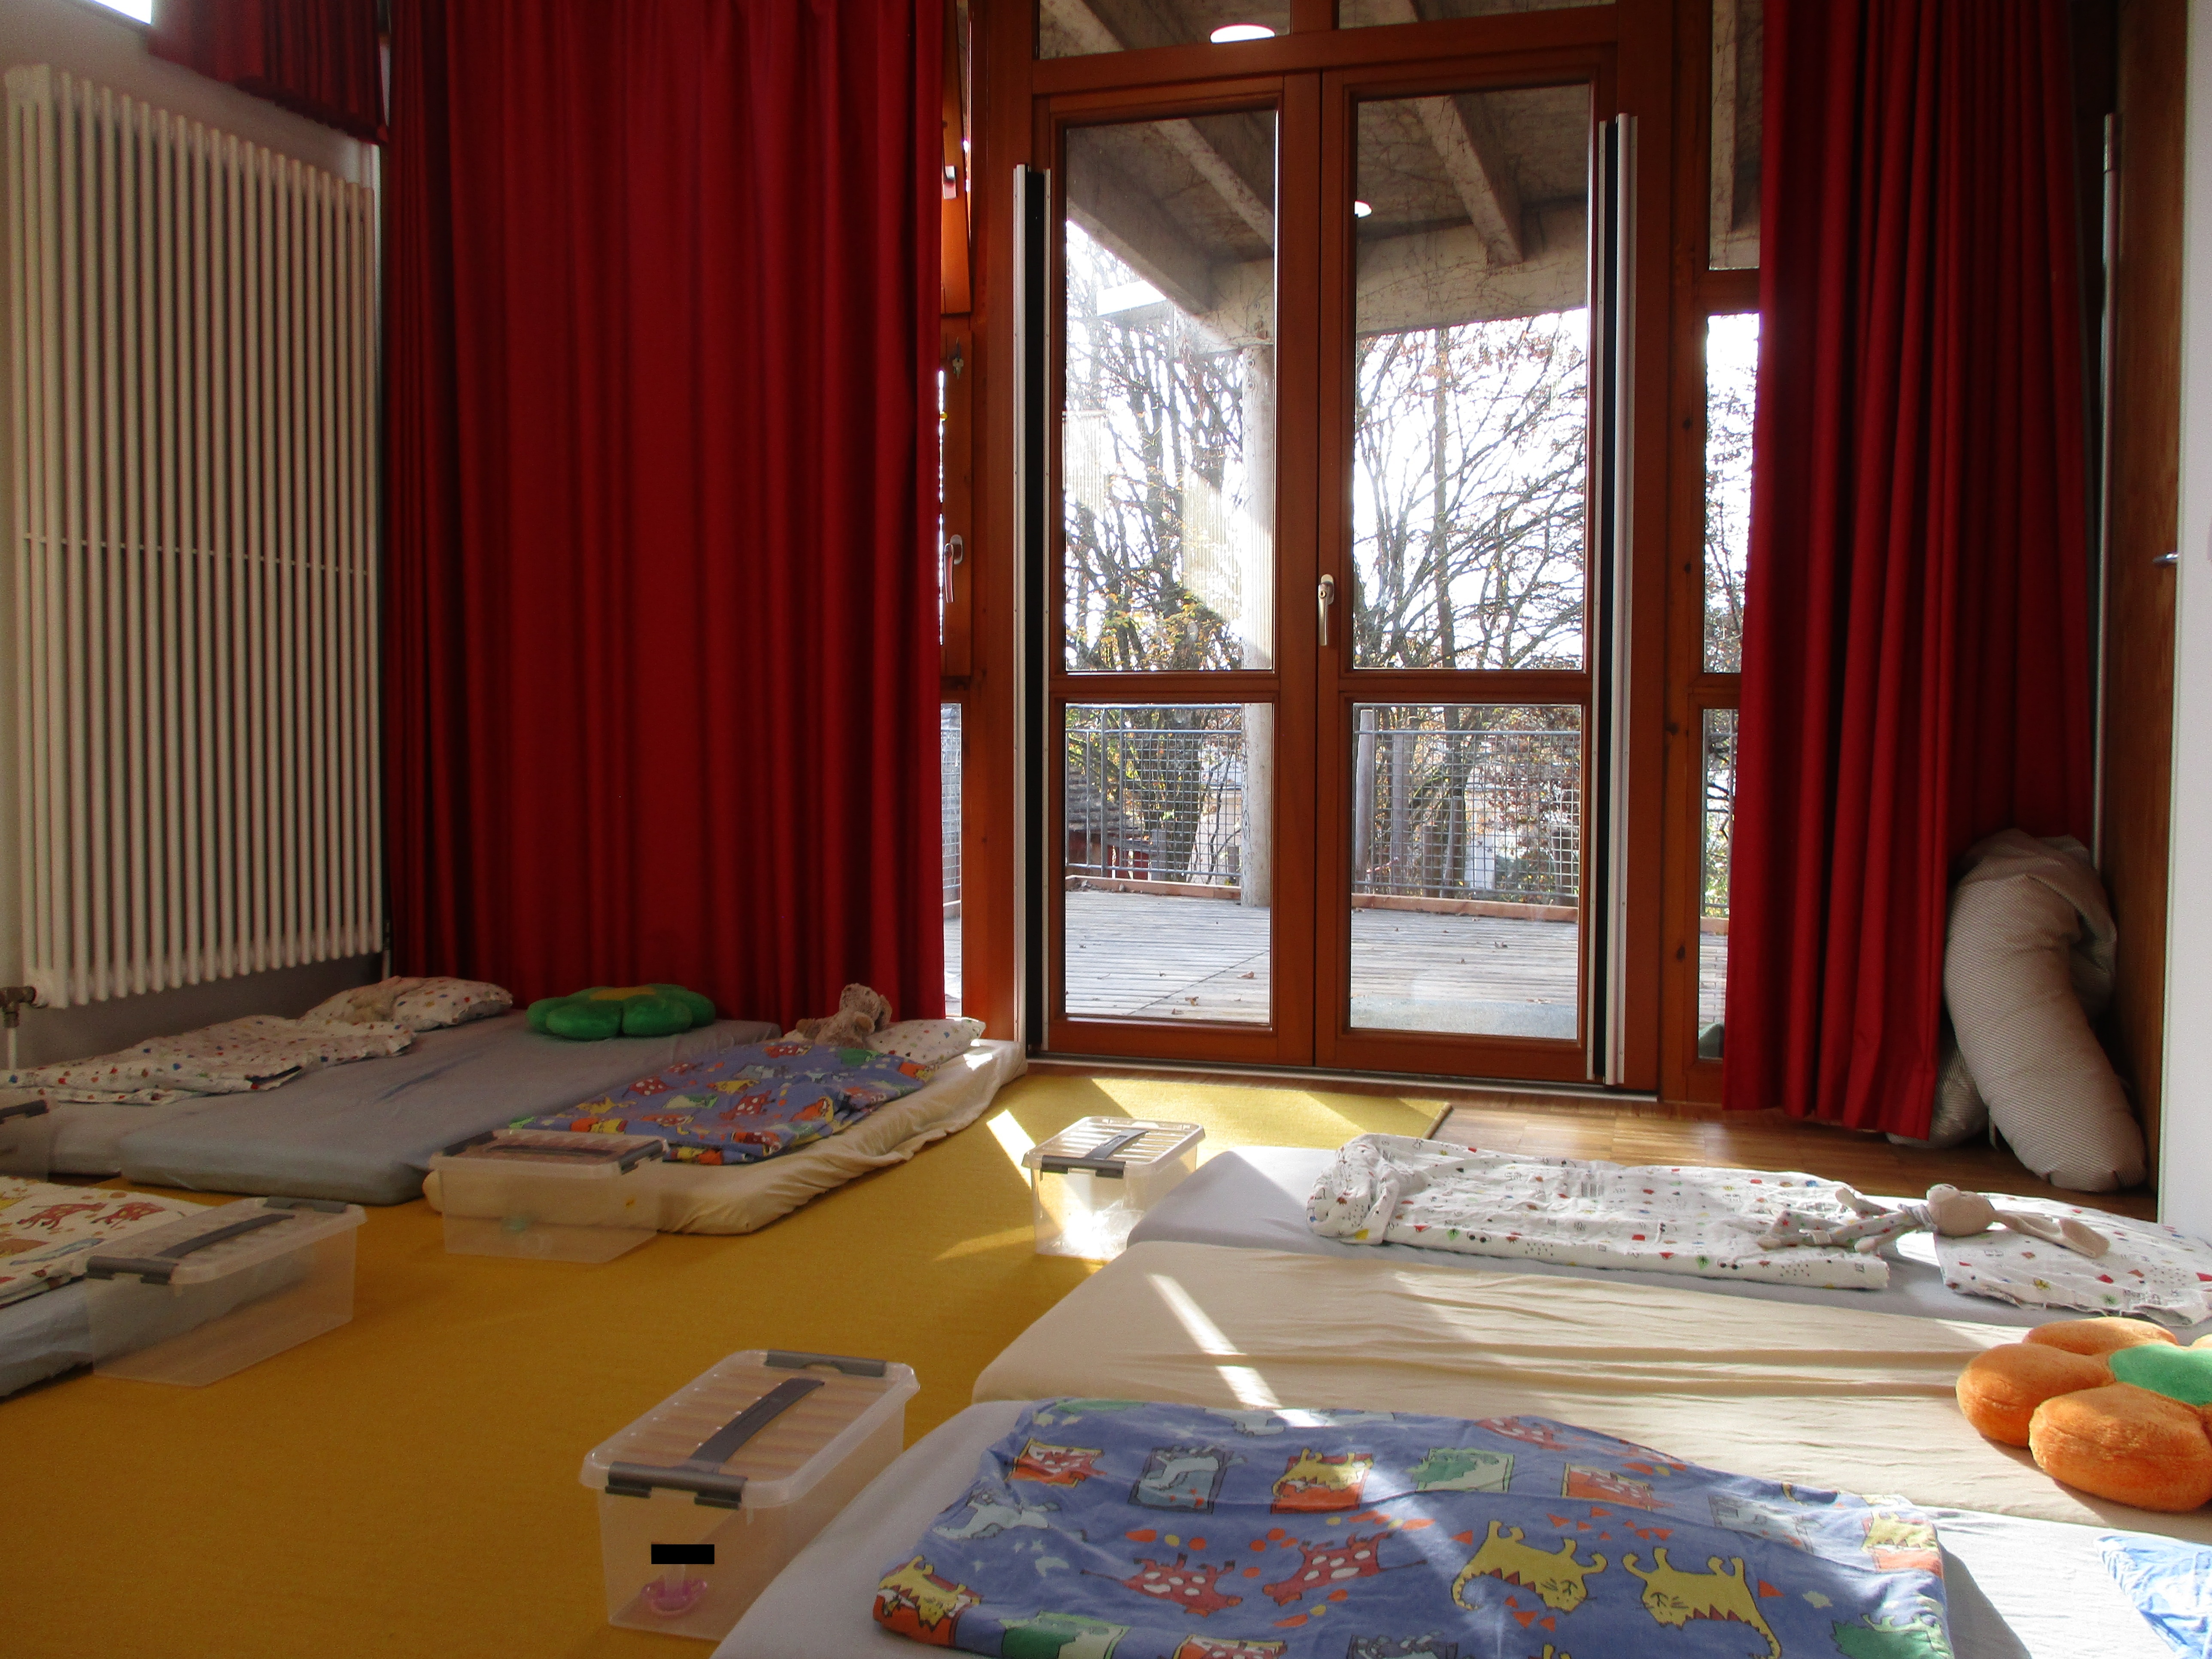 Das Bild zeigt Matratzen mit Bettwäsche auf dem Boden, die Fenster können mit einem roten Vorhang verdunkelt werden.